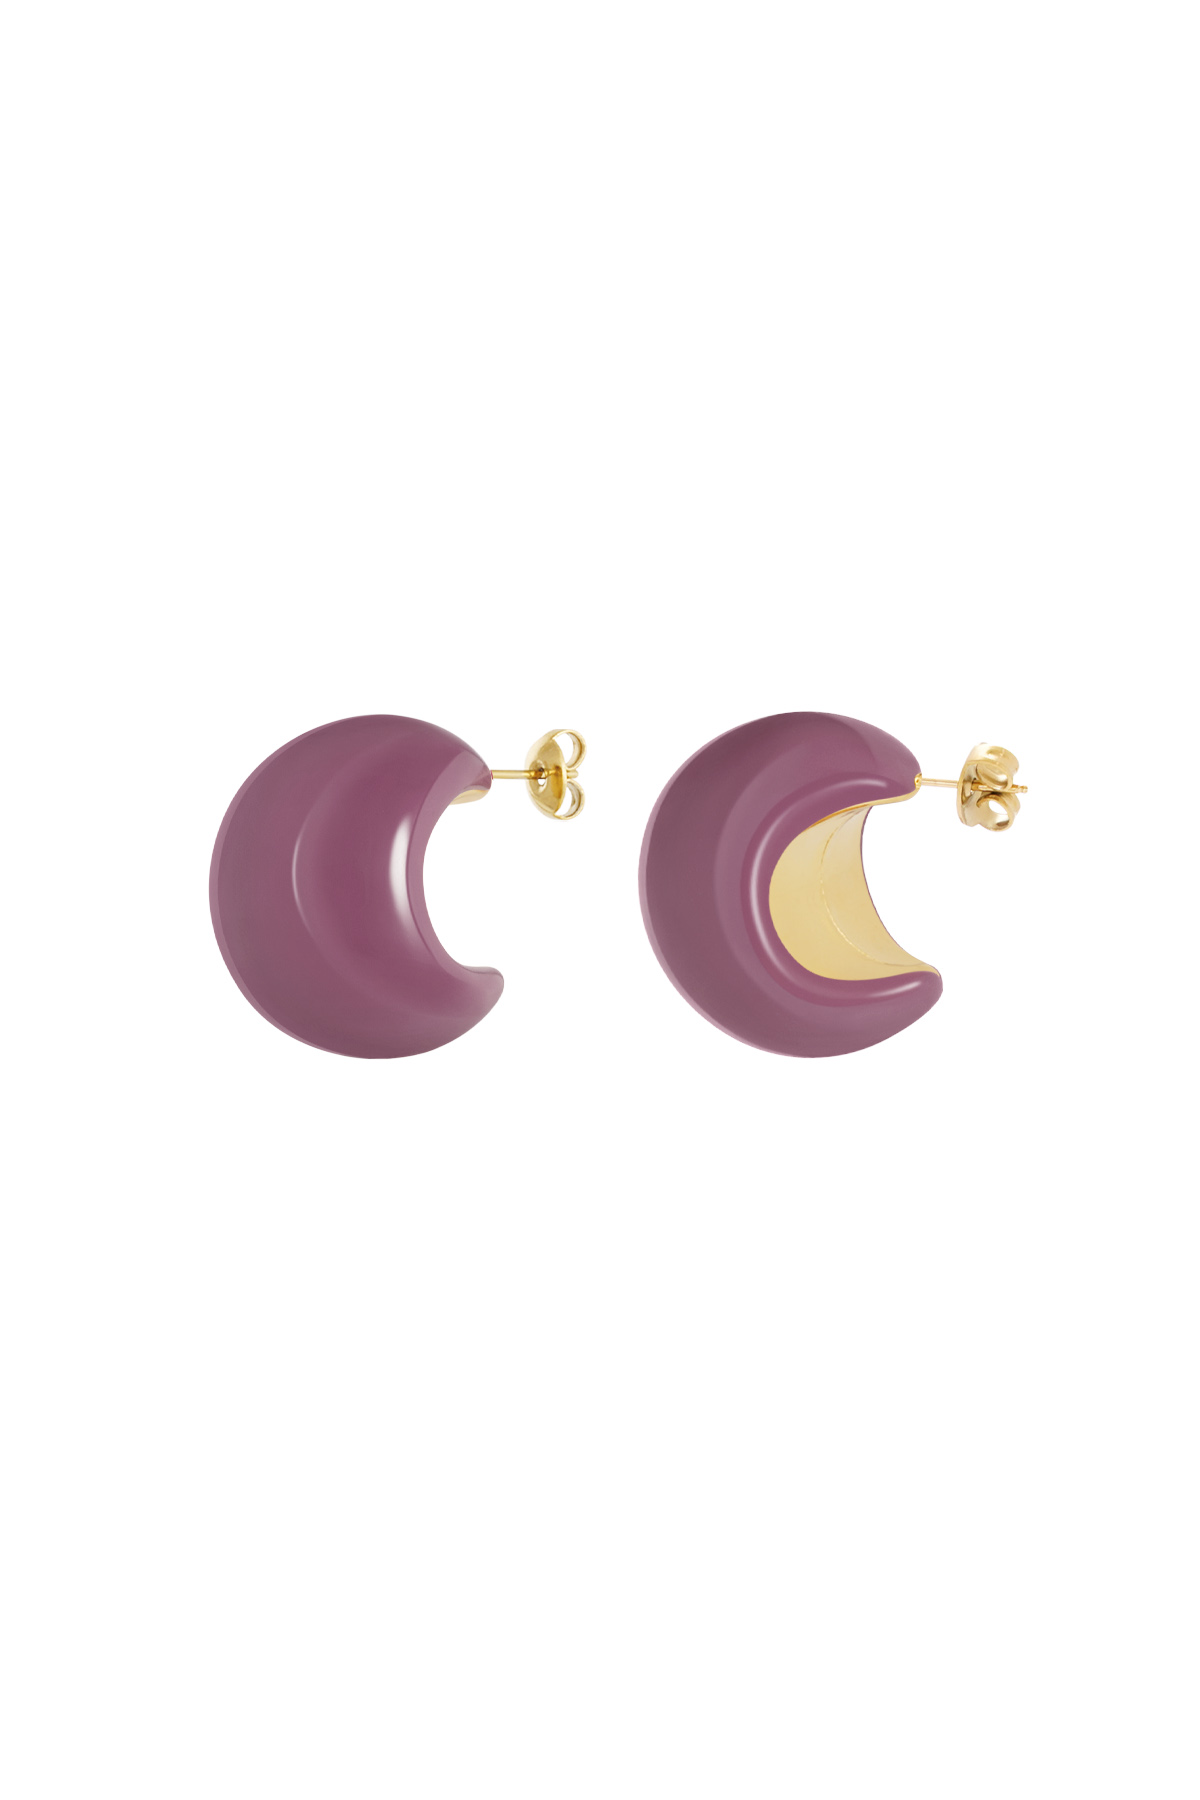 Kleurrijke halve maan oorbellen - paars h5 